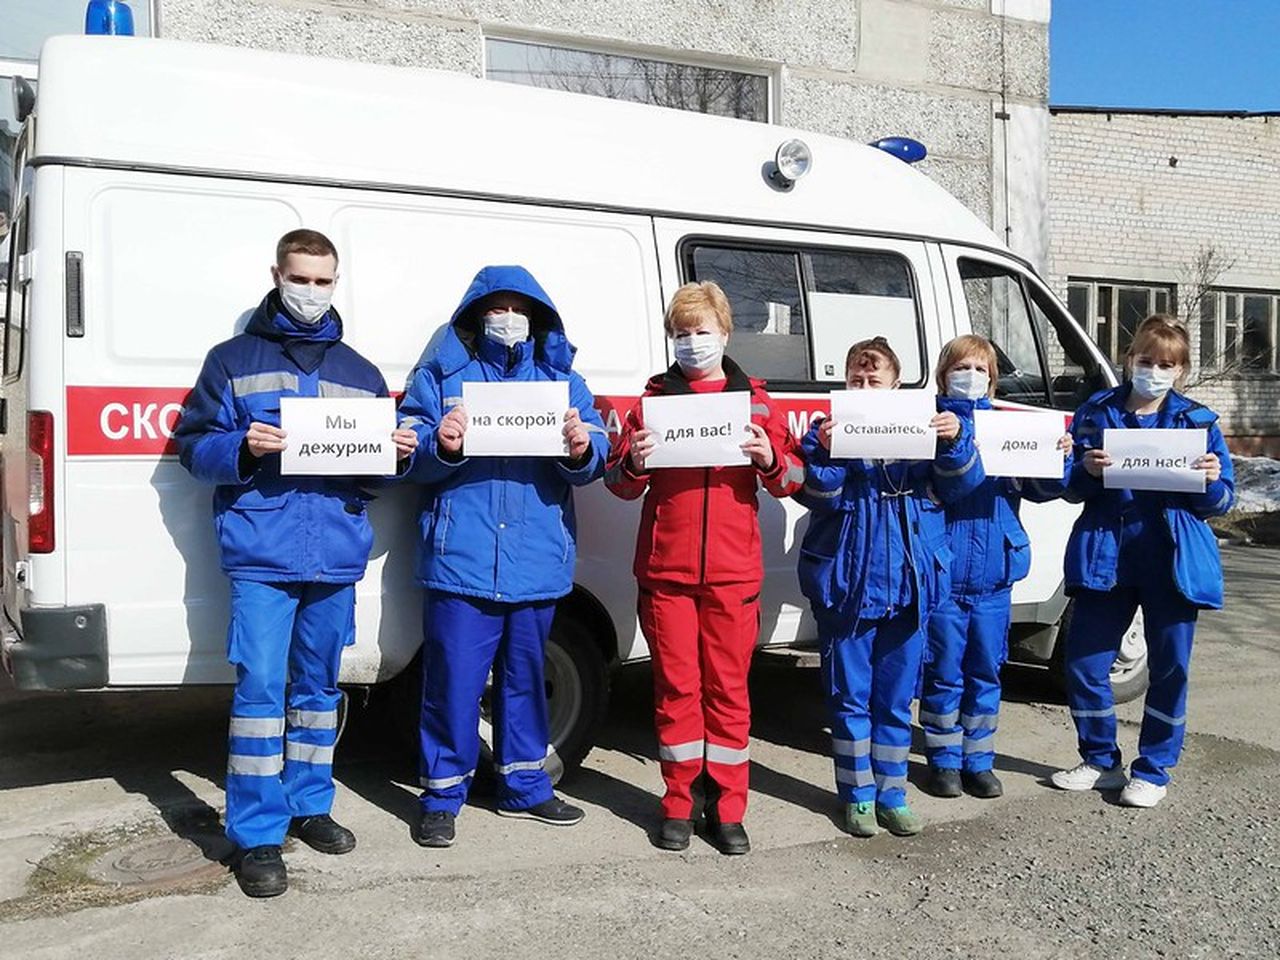 ГЛАВНОЕ «Оставайтесь дома»: медики Краснотурьинска поддержали международную акцию по борьбе с коронавирусом, но сами «никак не защищены»